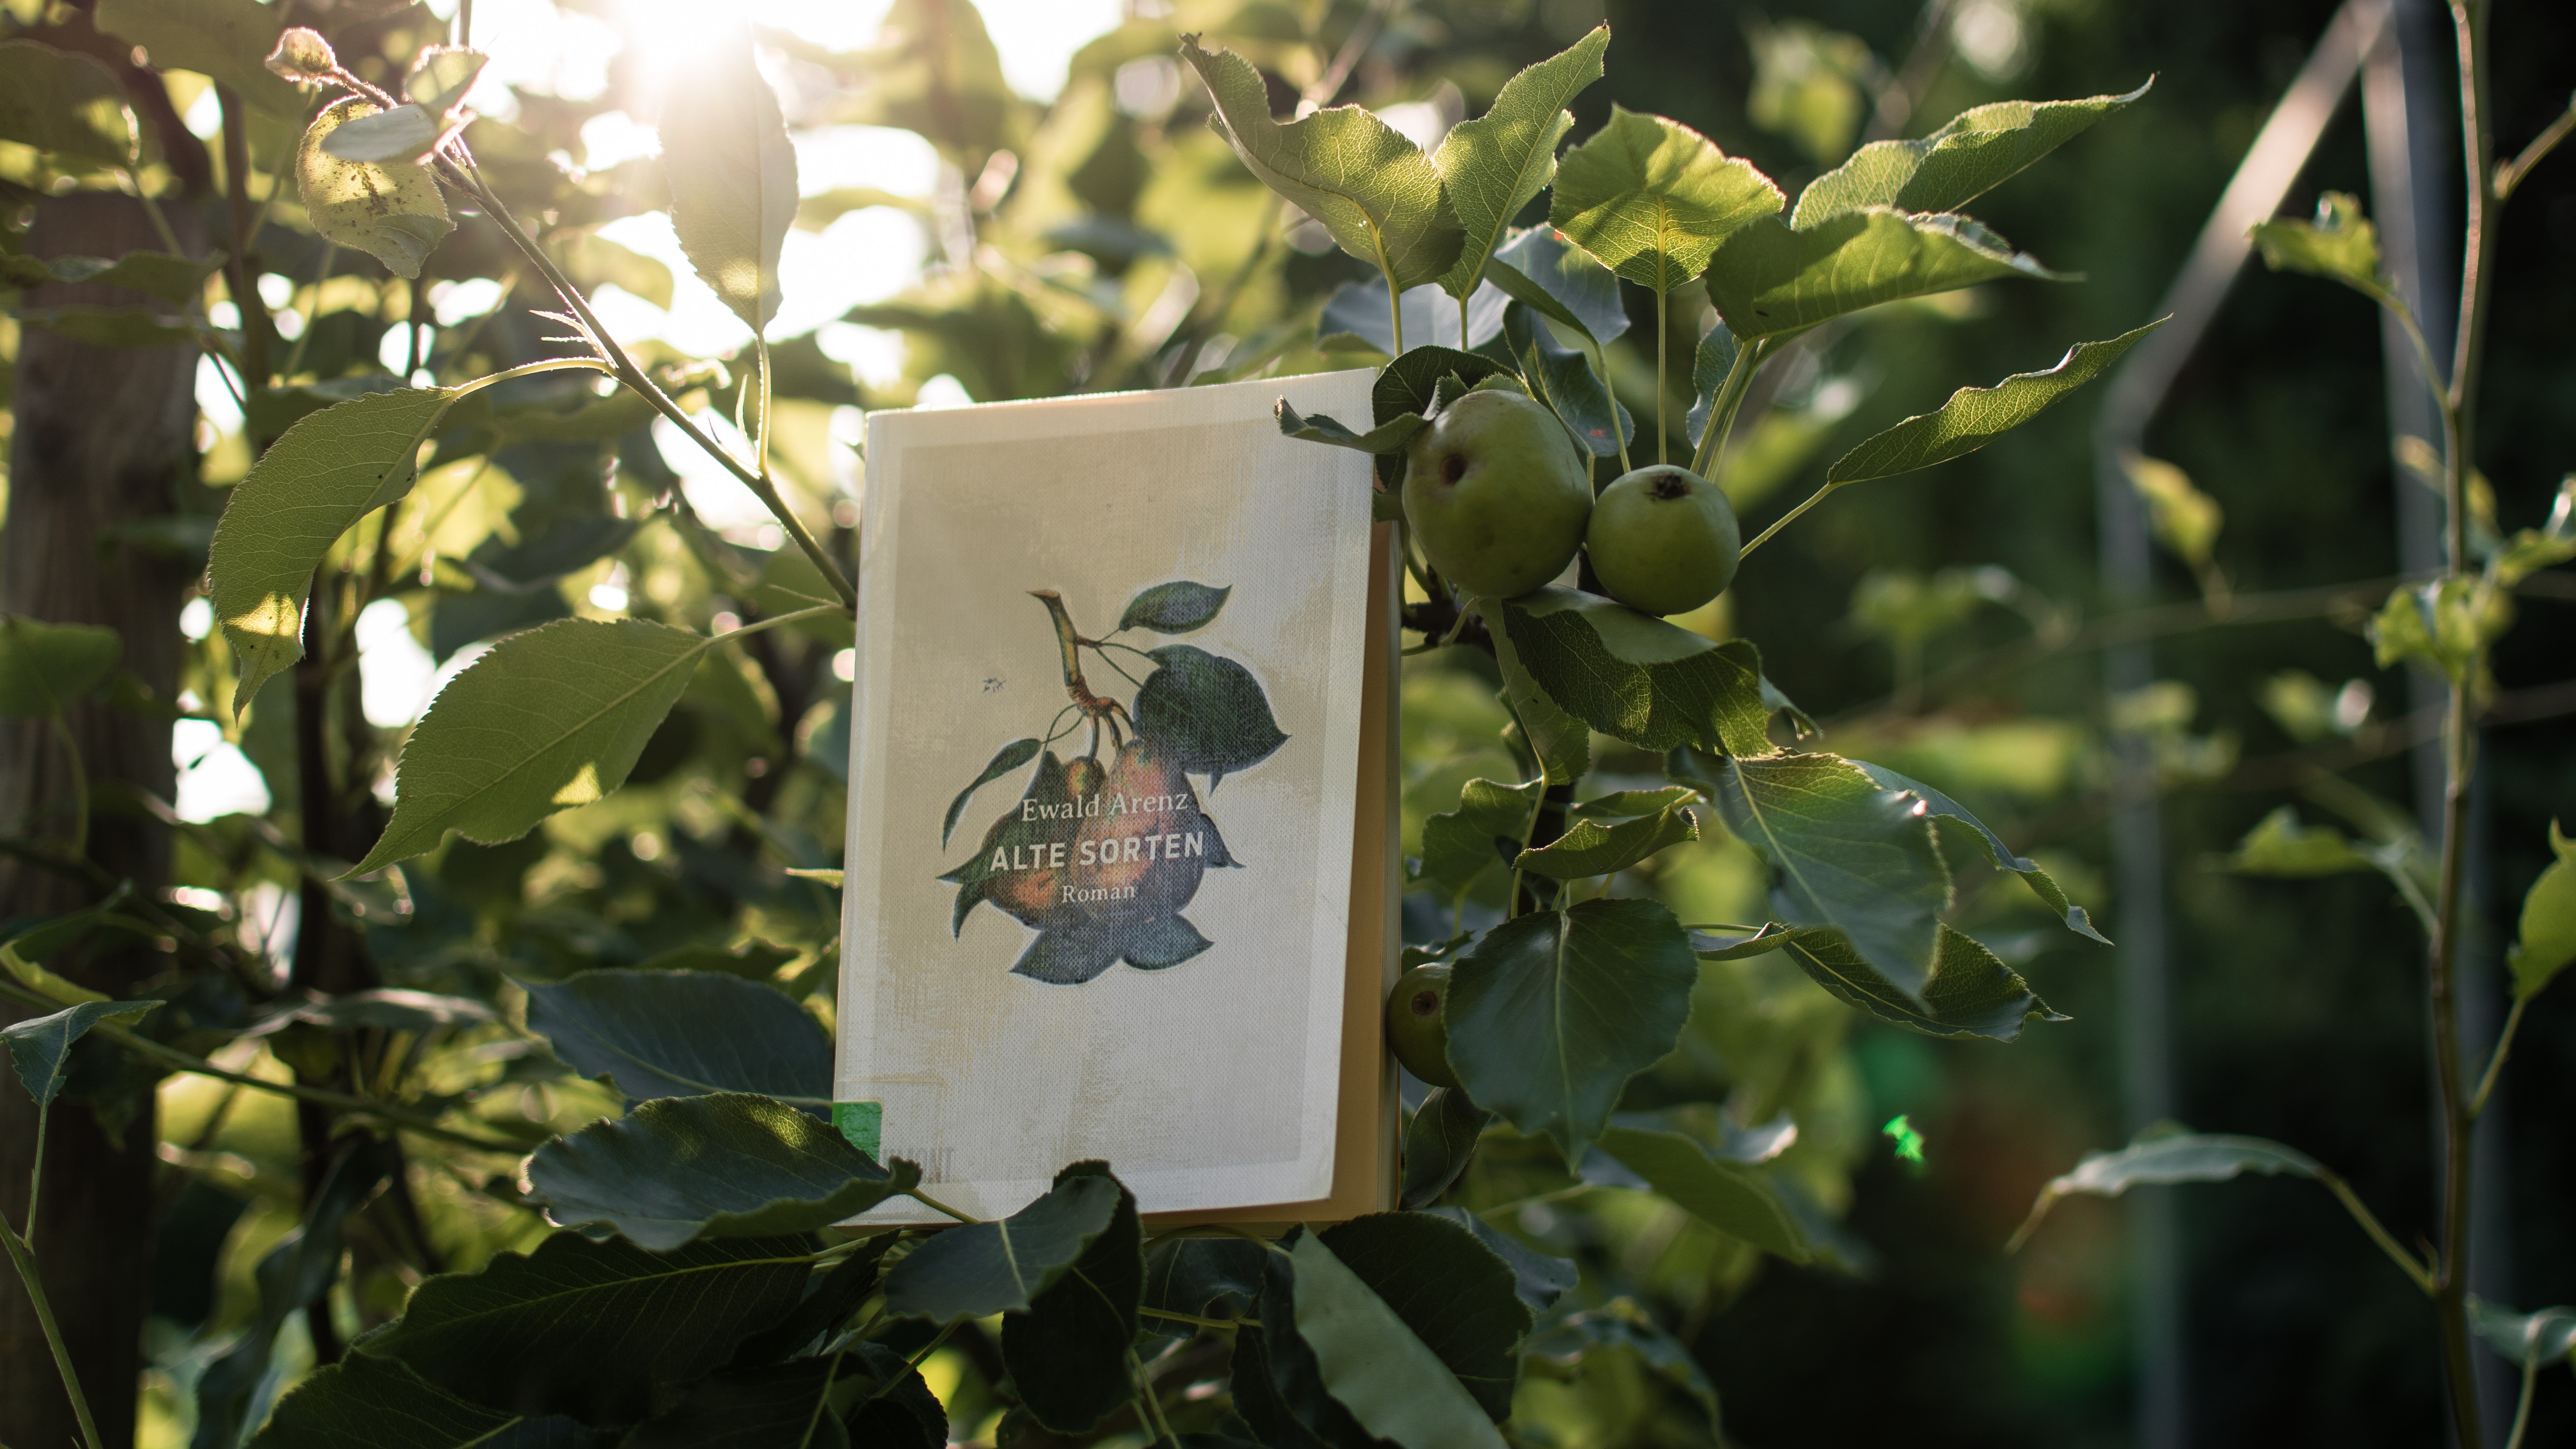 Buch "Alte Sorten" in einem Apfelbaum.